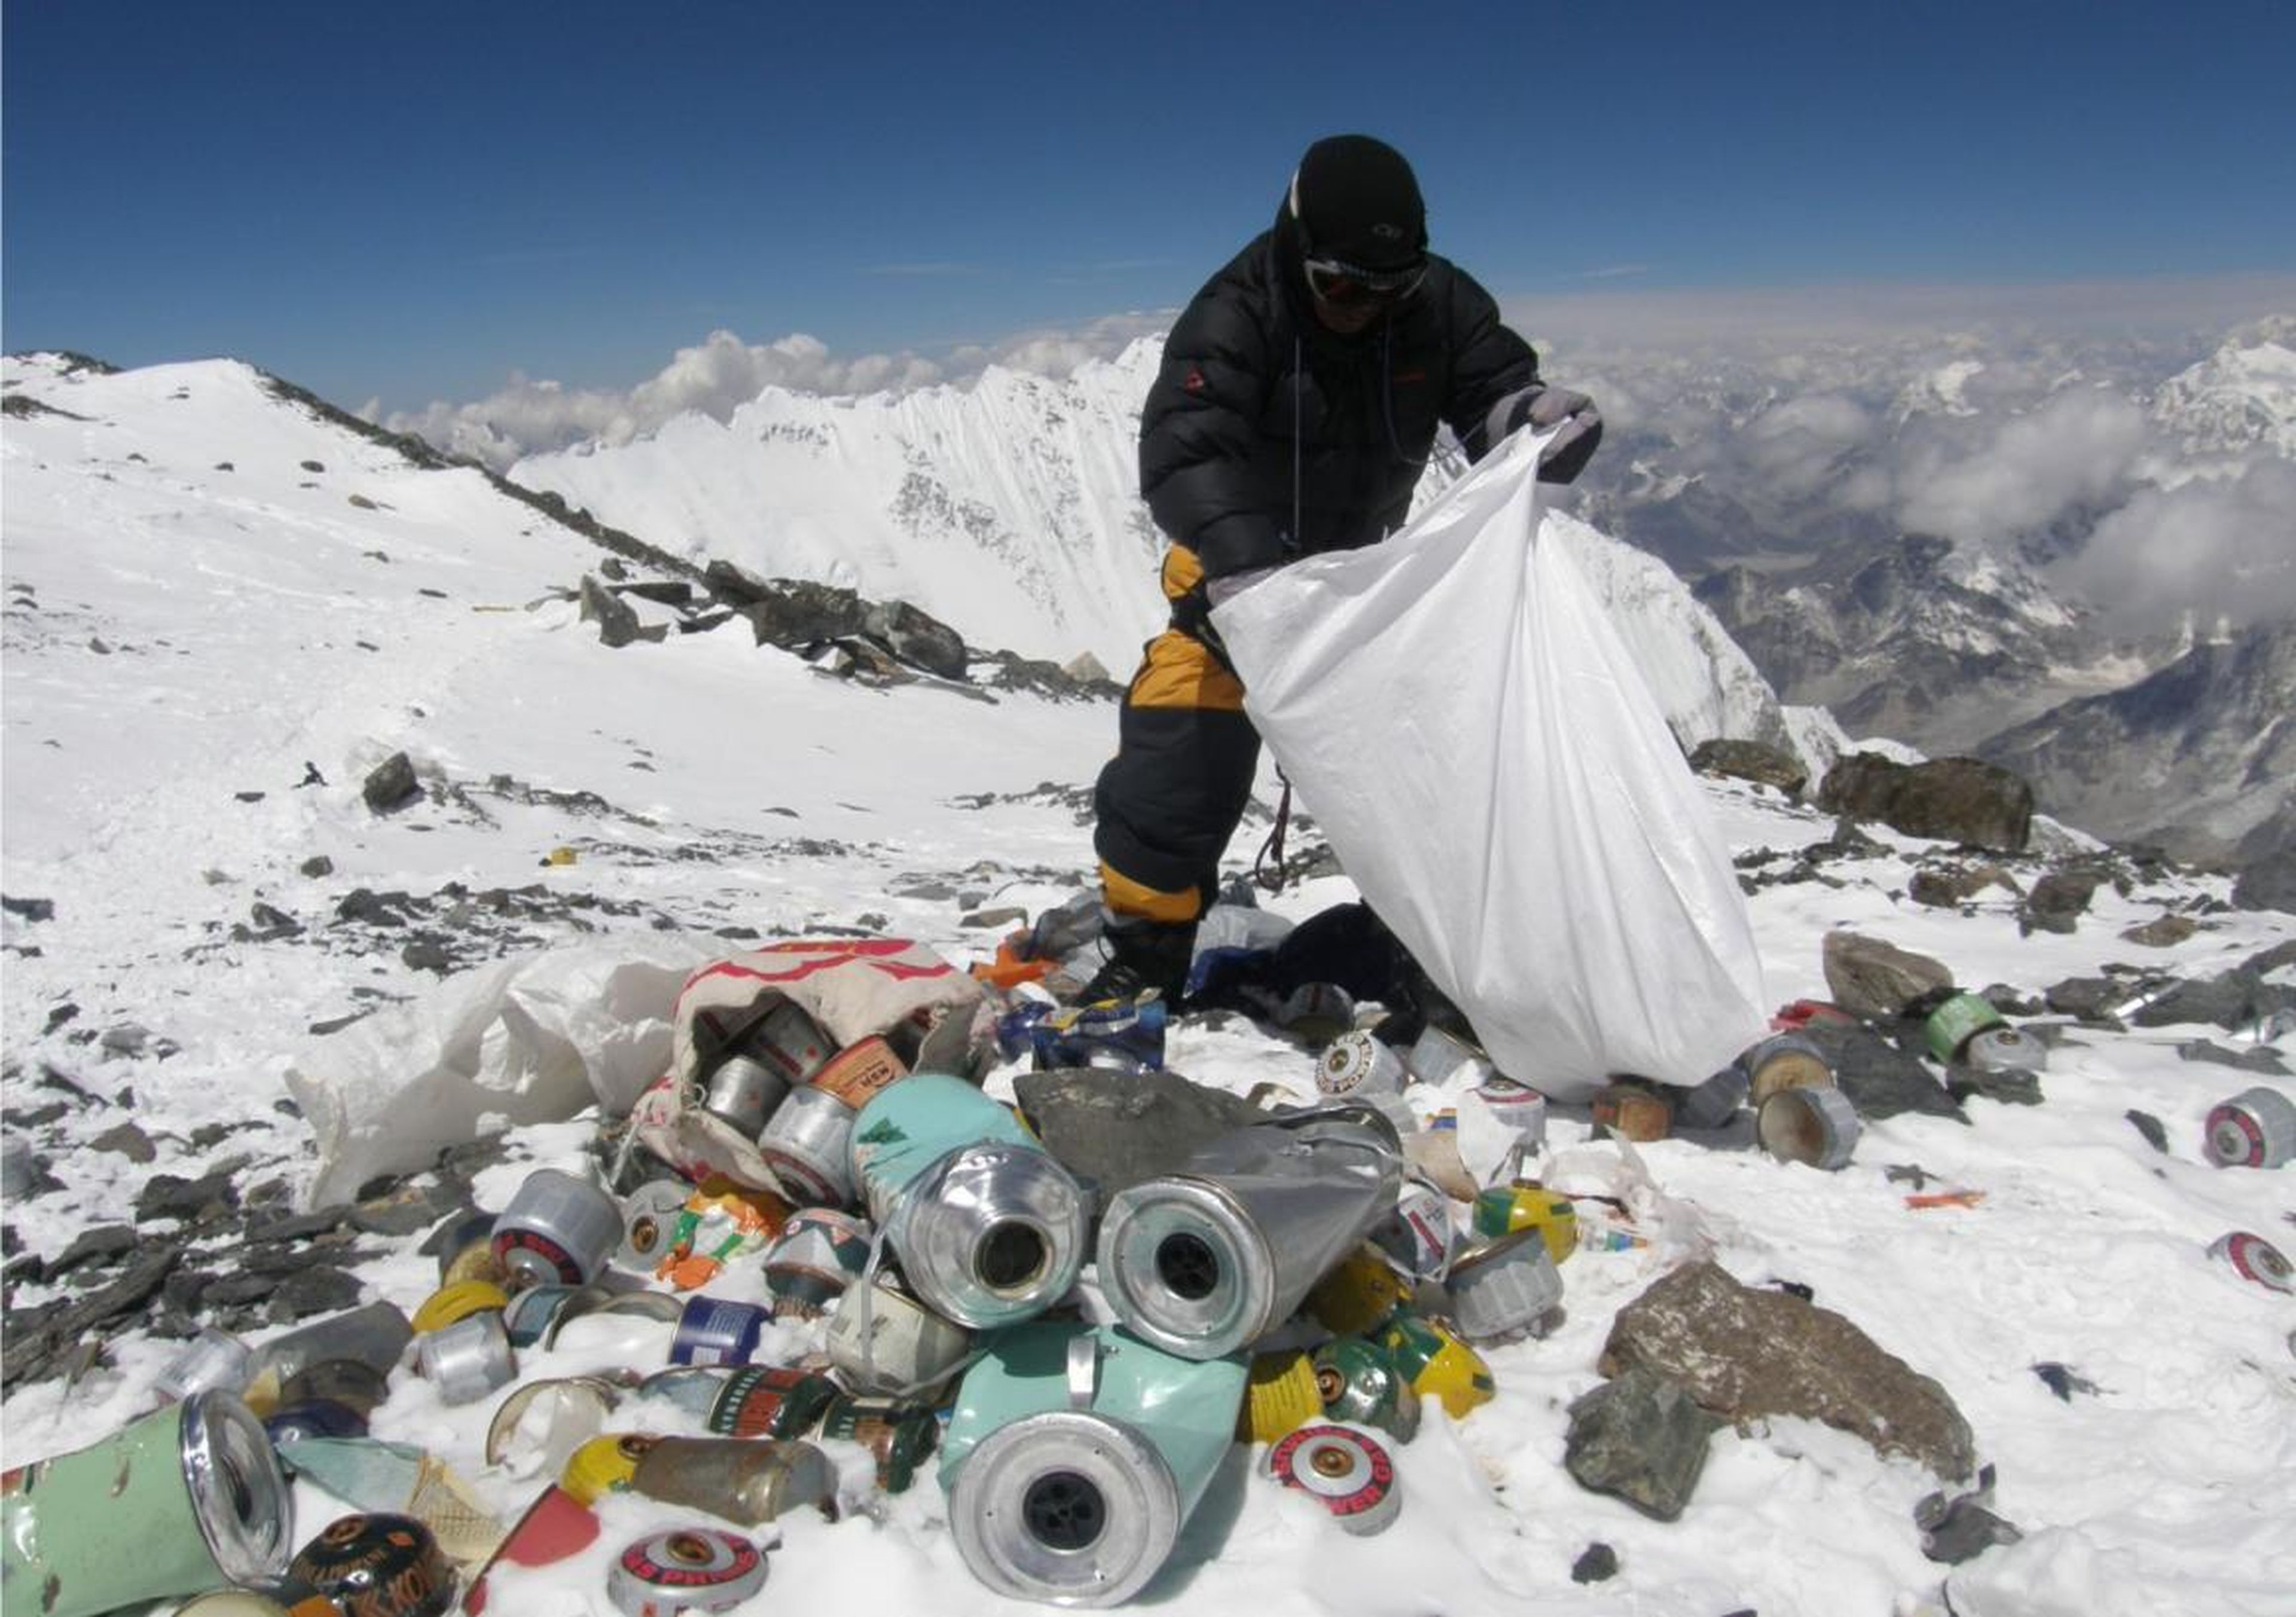 Un sherpa nepalí recoge basura. Recogió más de dos toneladas que habían dejado atrás algunos montañeros entre los que se inlcuye botellas vacías de oxígeno y cadáveres